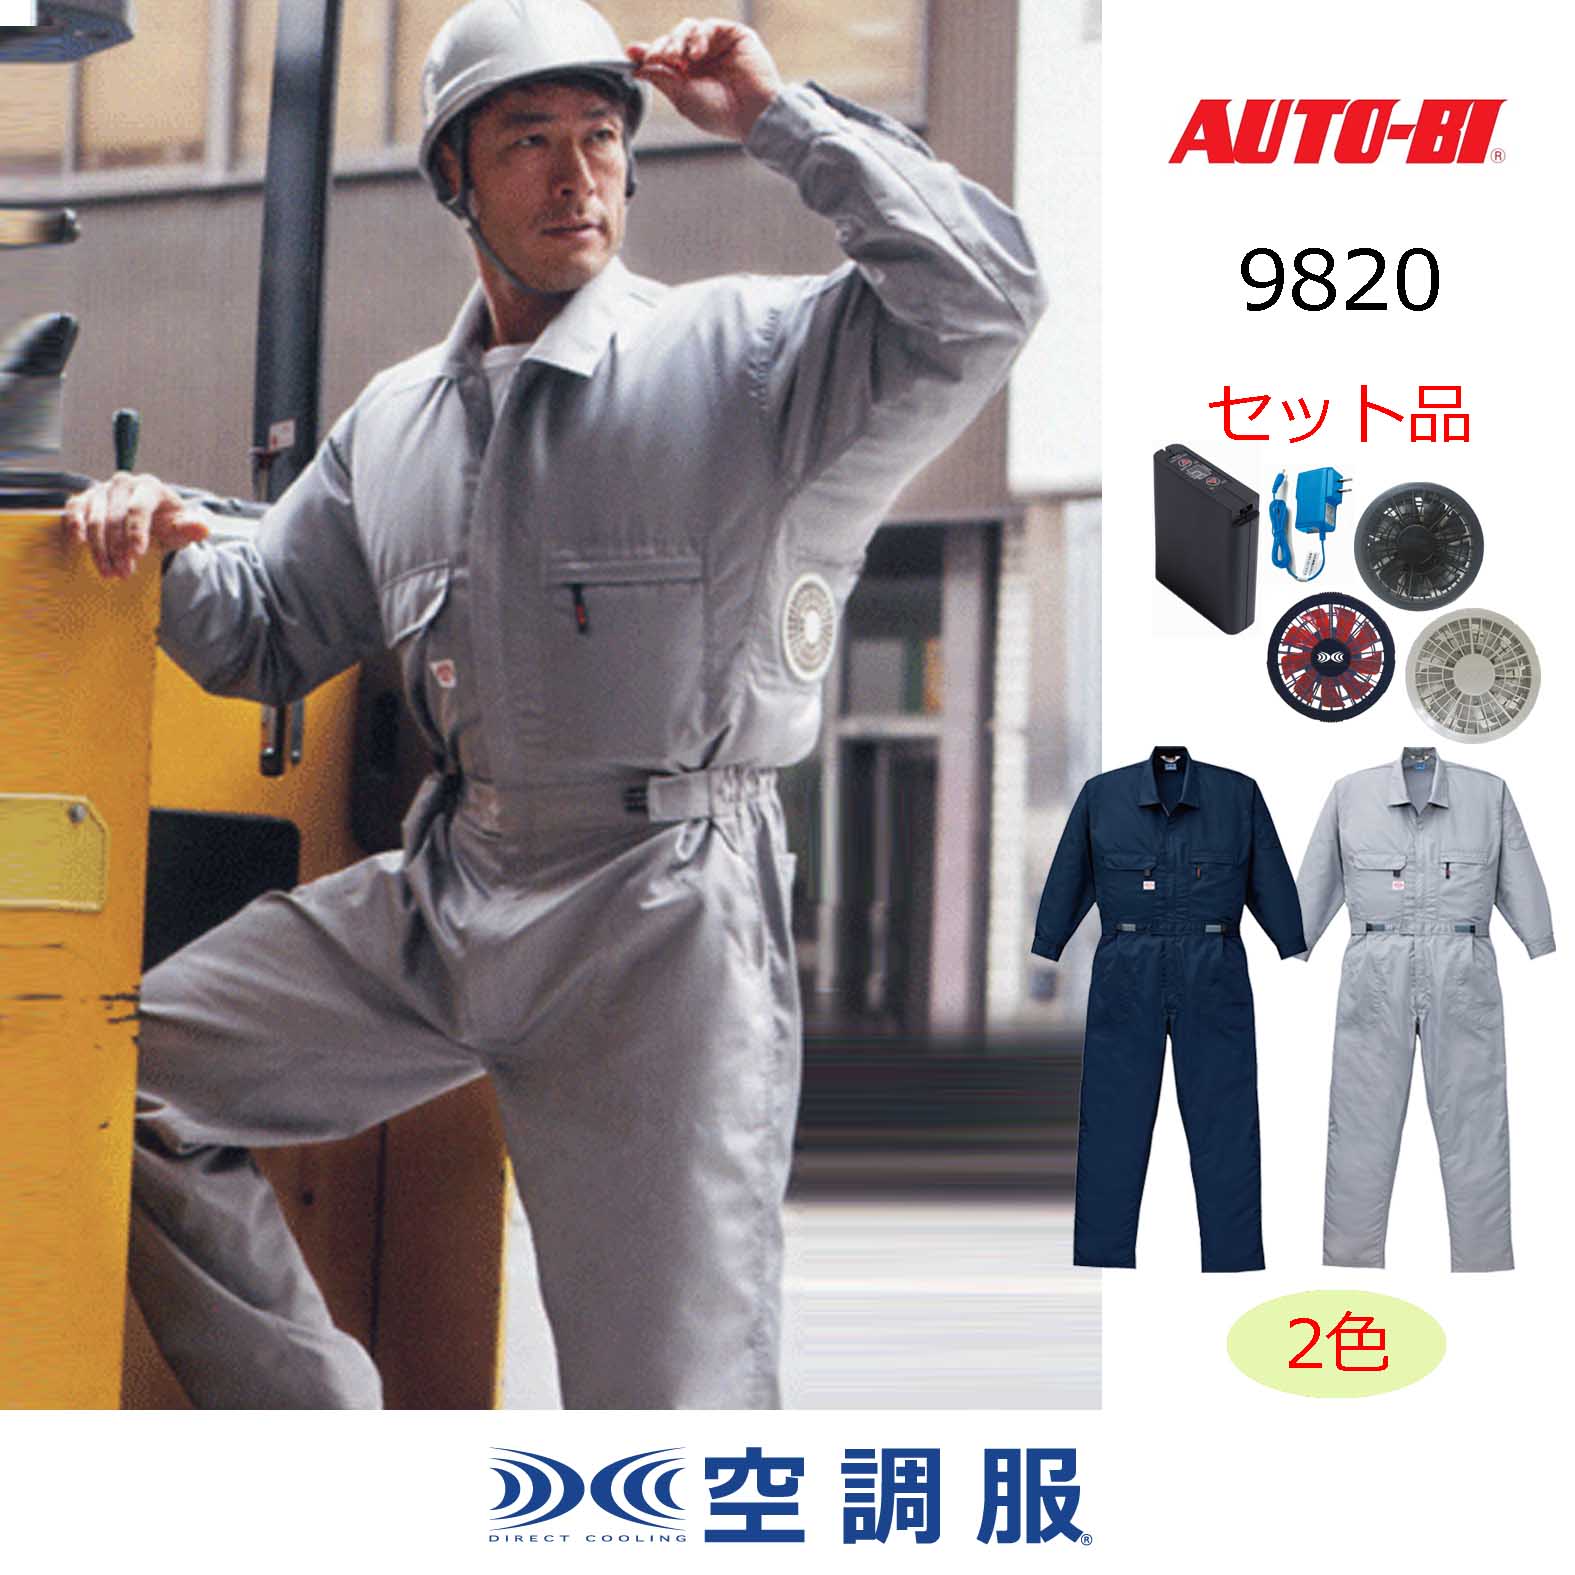 9820【空調服®セット】AUTO-BIツナギ・ファン・バッテリー(充電器付 